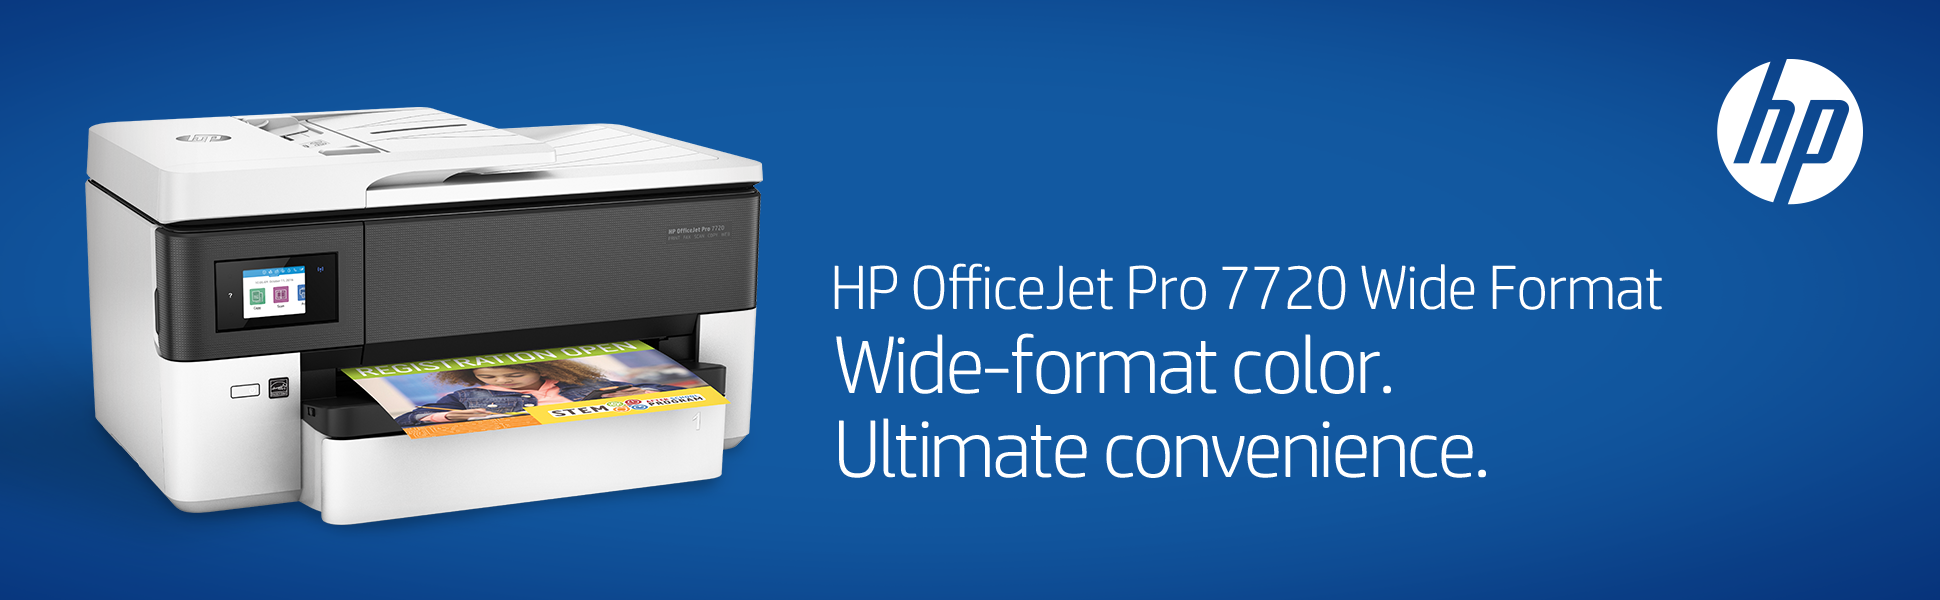 HP OFFICEJET PRO 7720 WIDE FORMAT ALL-IN-ONE INKJET PRINTER